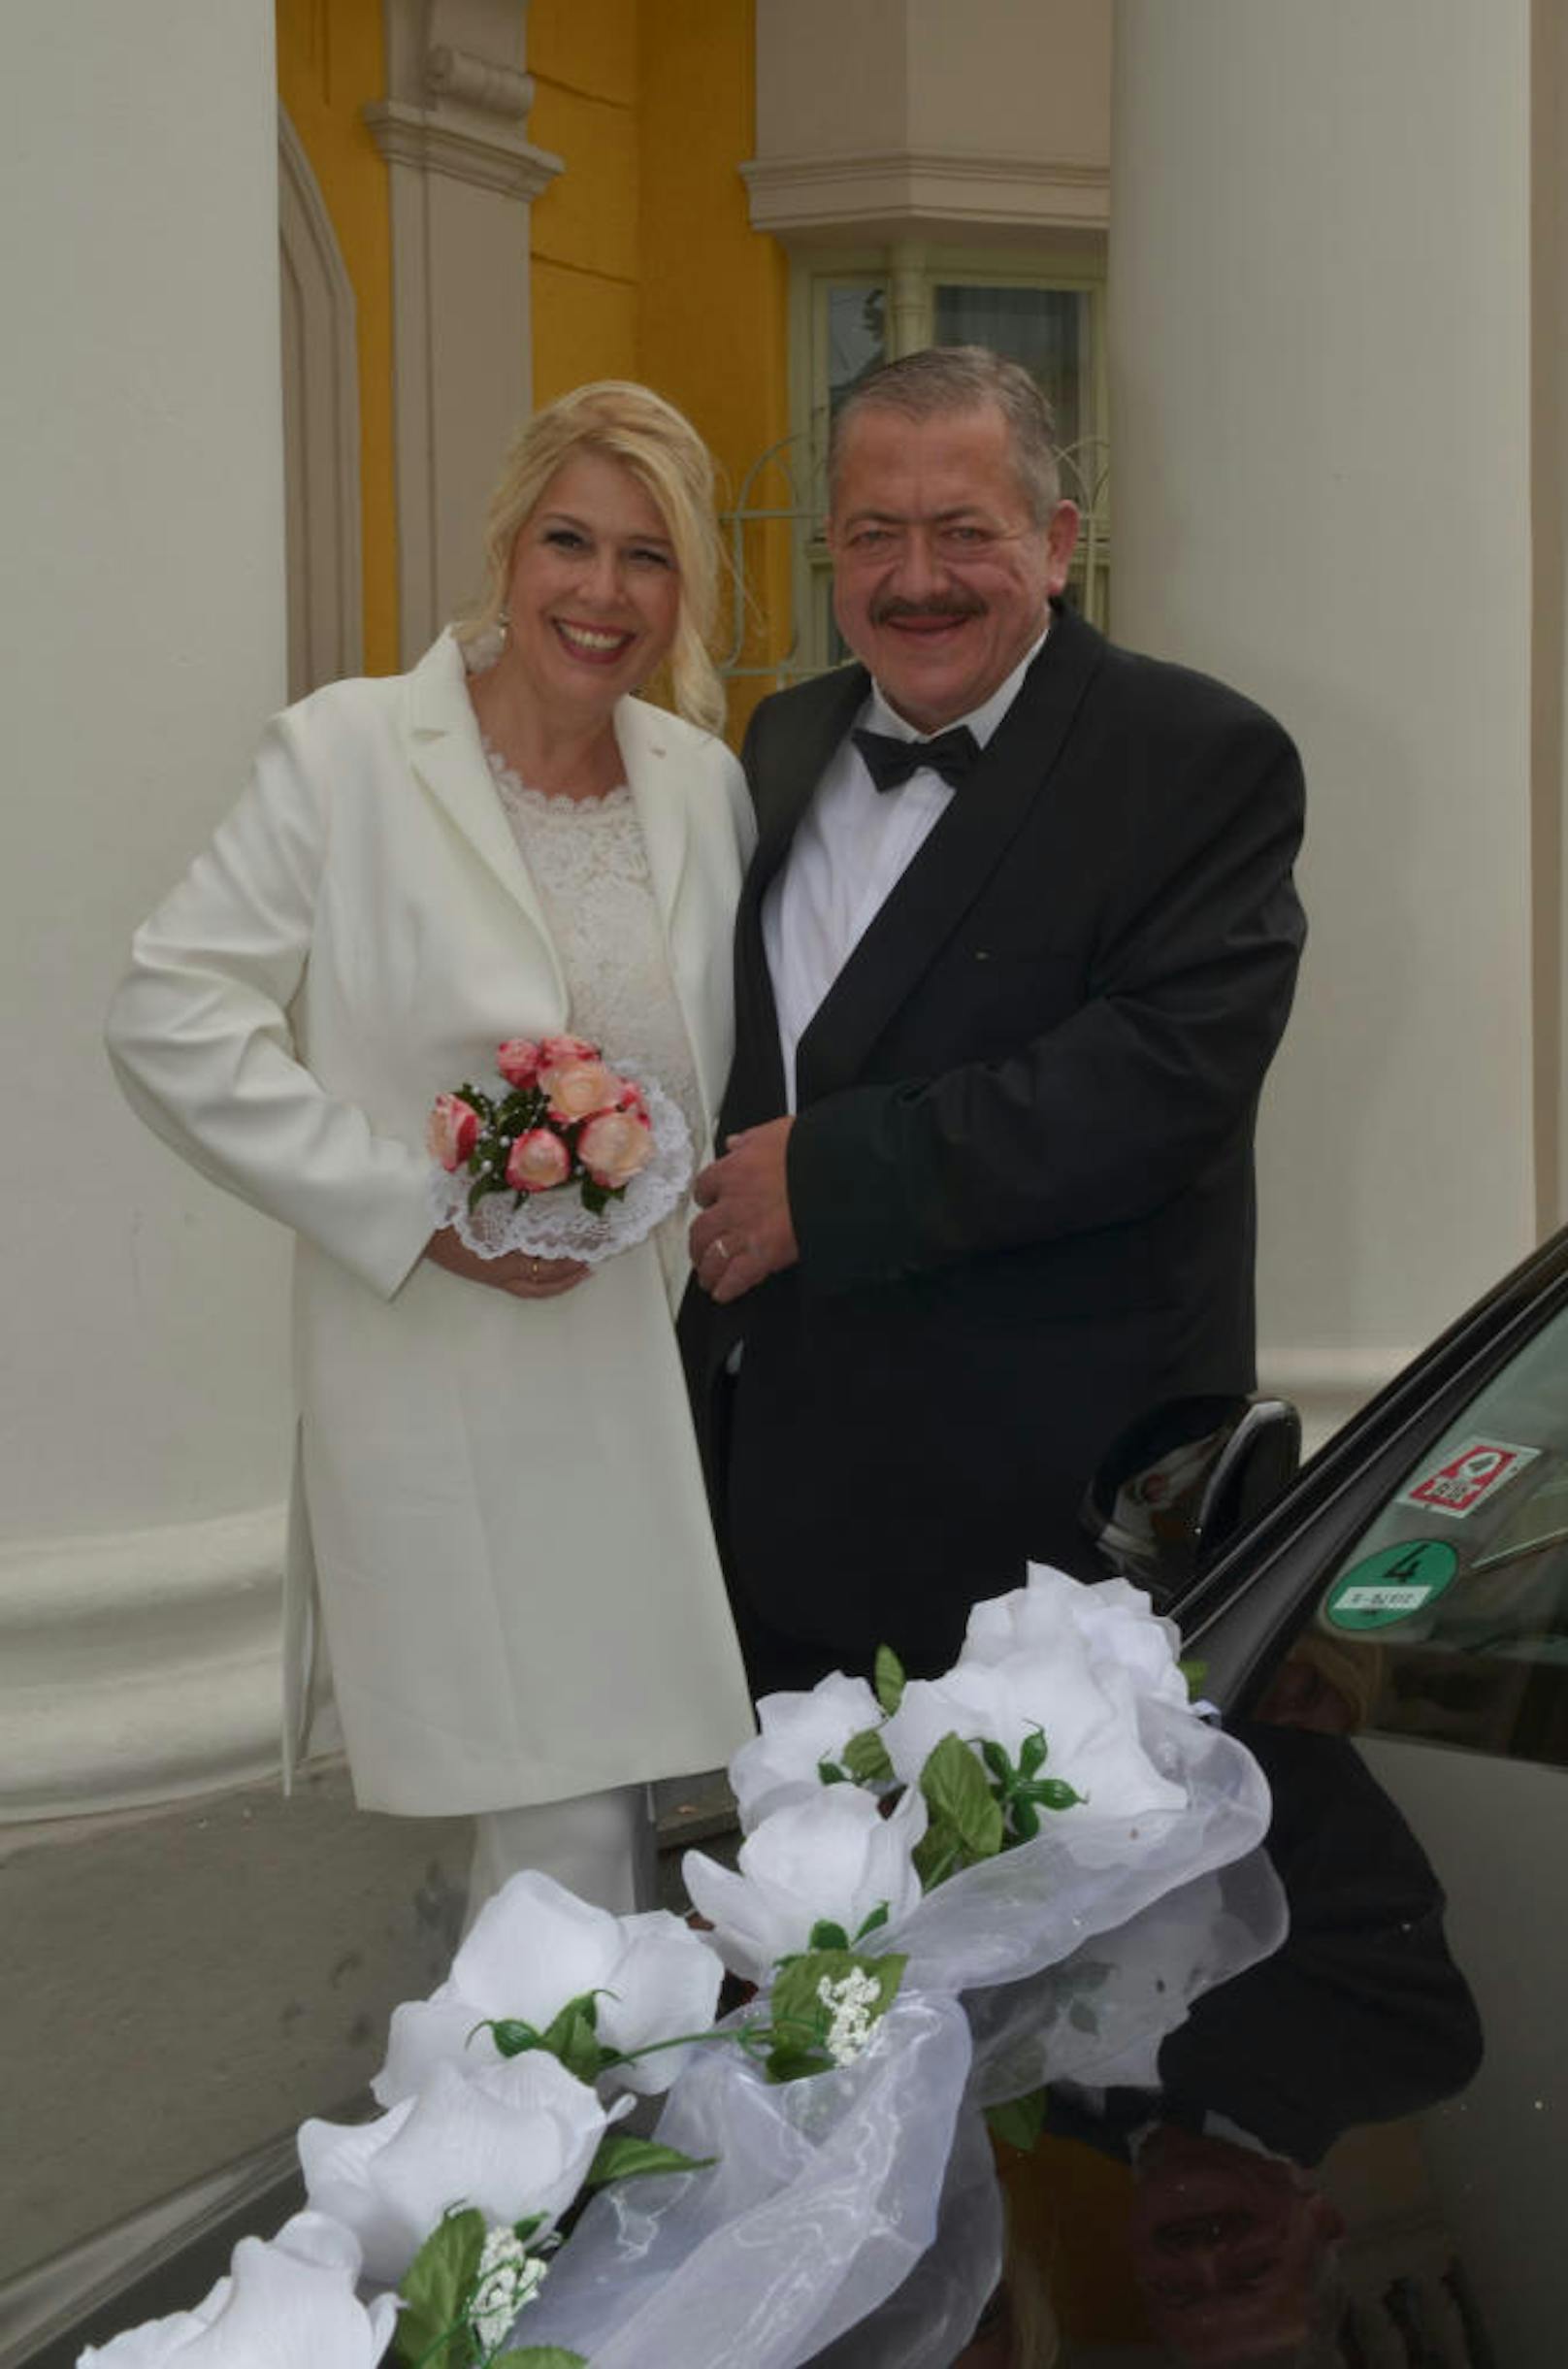 Hochzeit Joseph und Bettina Hannesschläger 
Bildcredit: obs/FREIZEIT REVUE/Barbara Volker